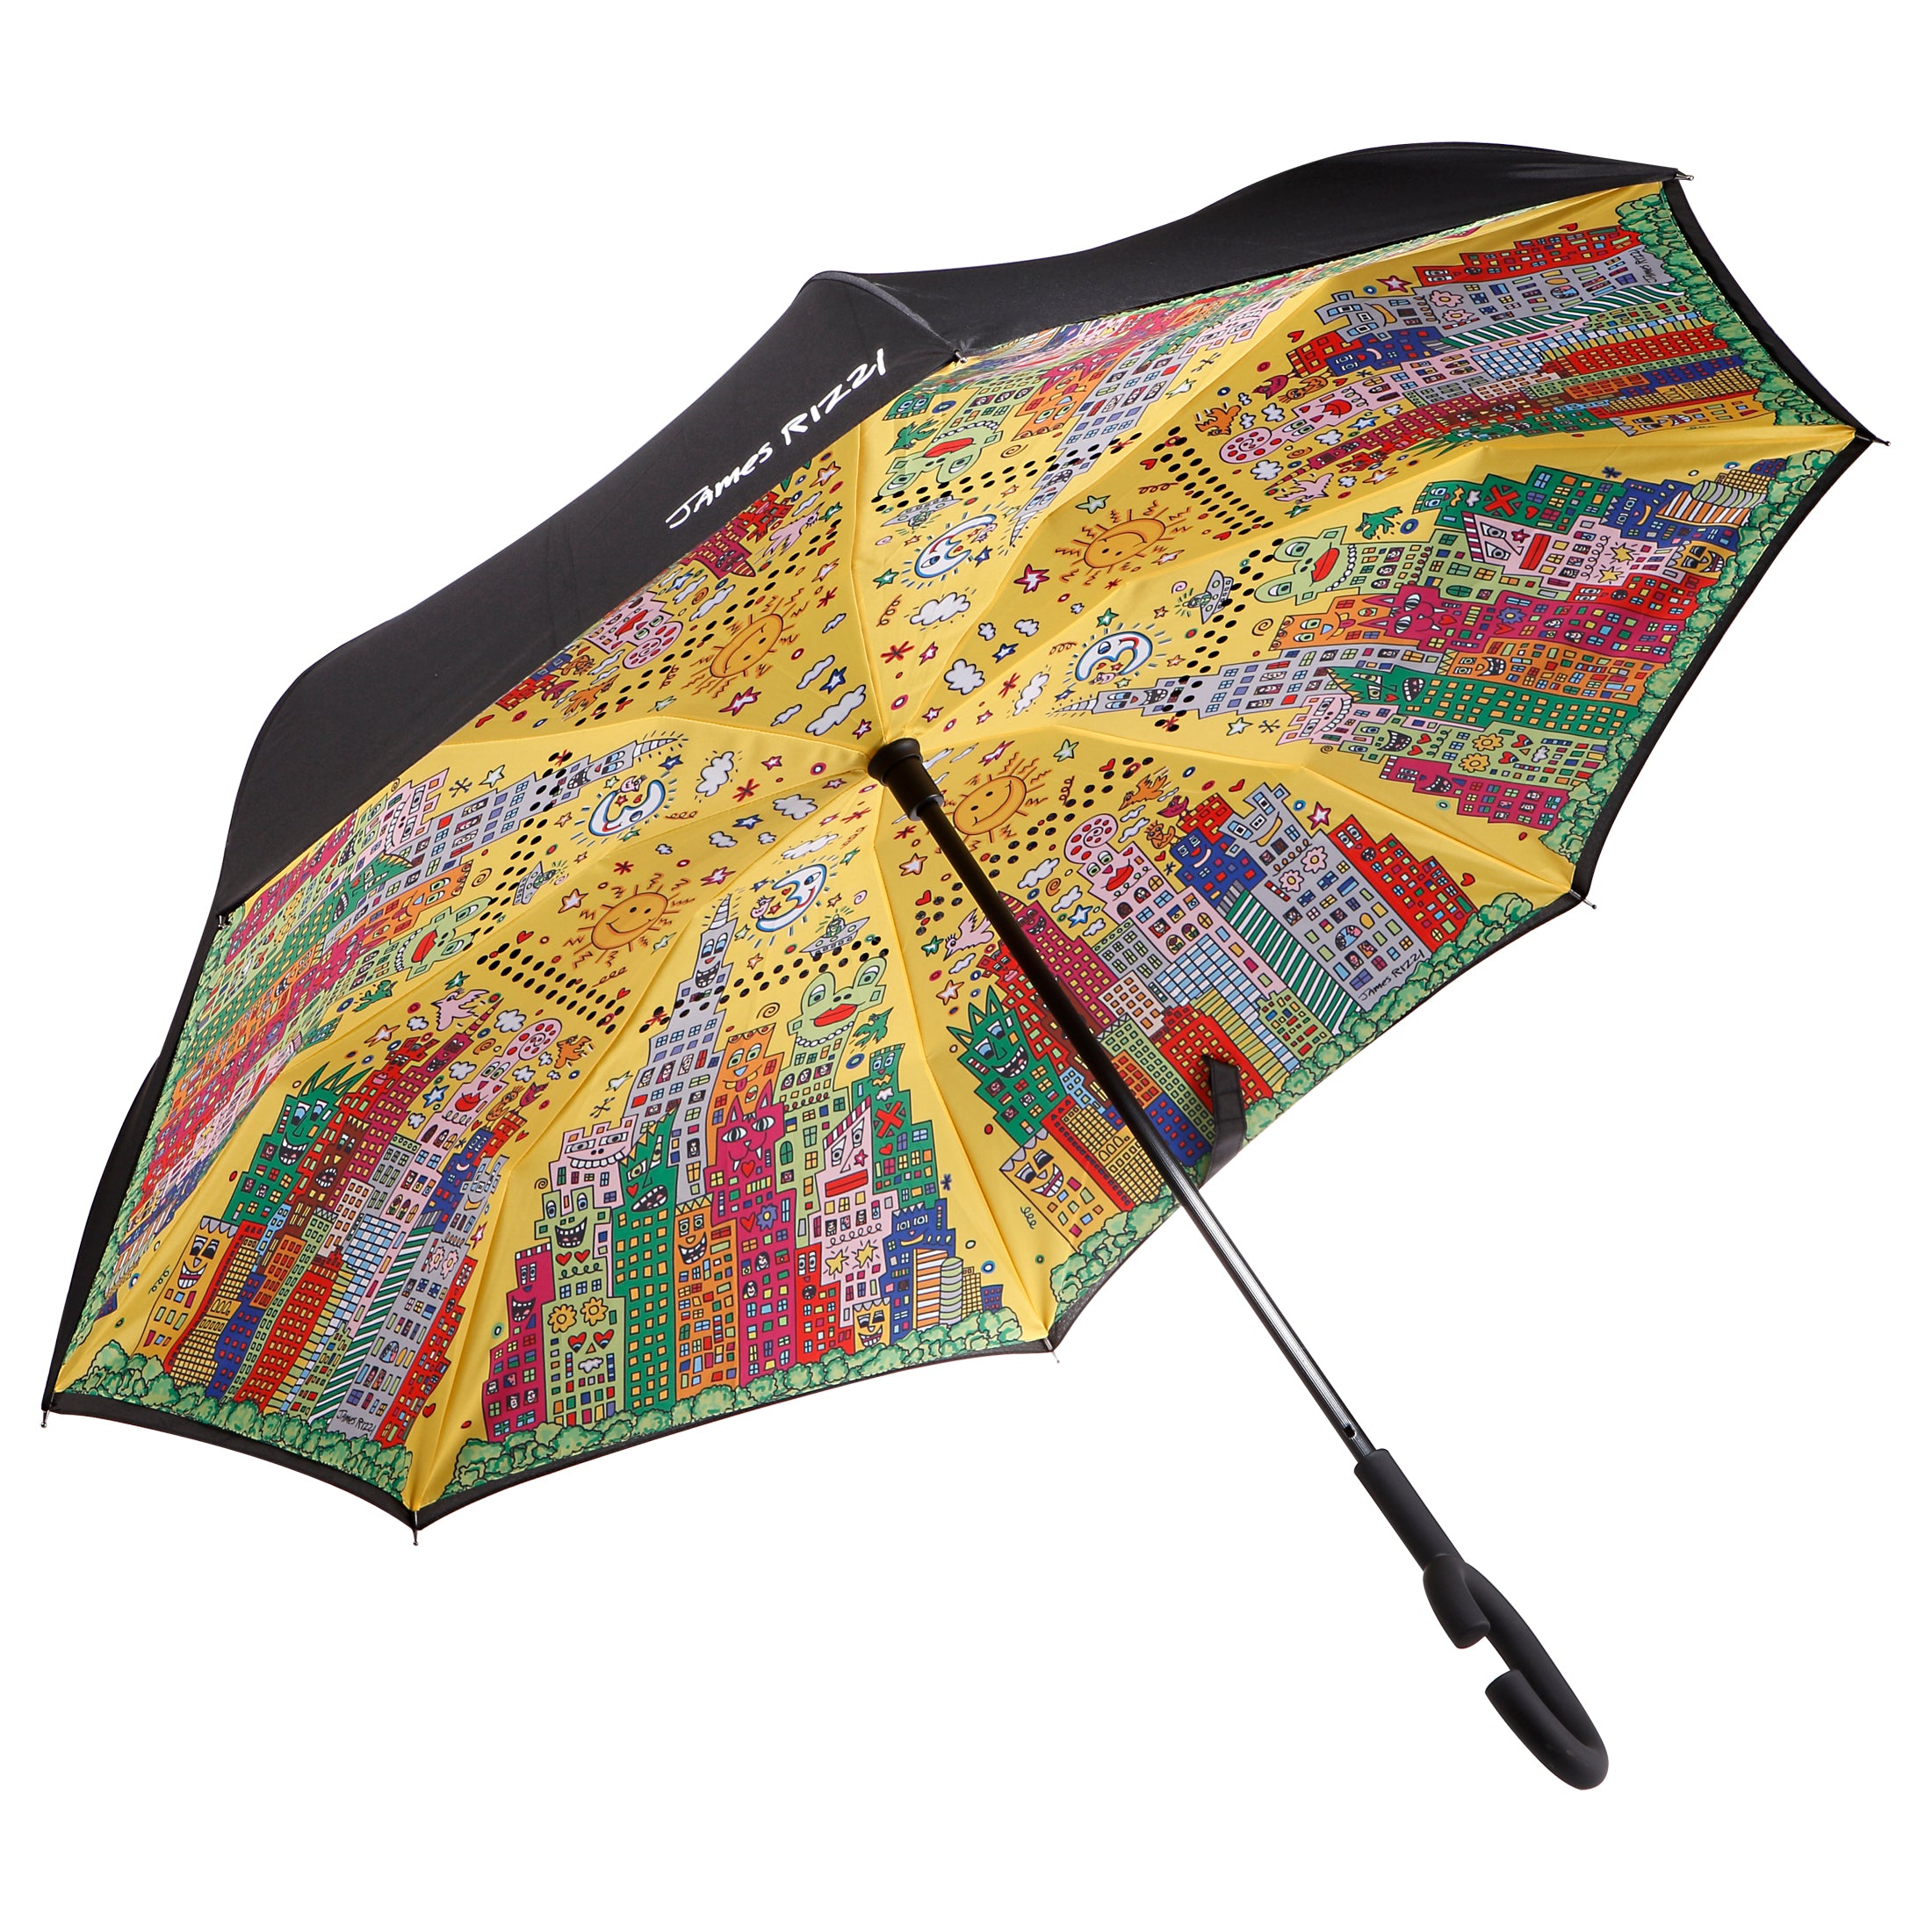 Regenschirm-Rizzi-My-New-York-City-Sunset-Pop-Art-Schirm-von-Goebel-berlindeluxe-regenschrim-hochhaueser